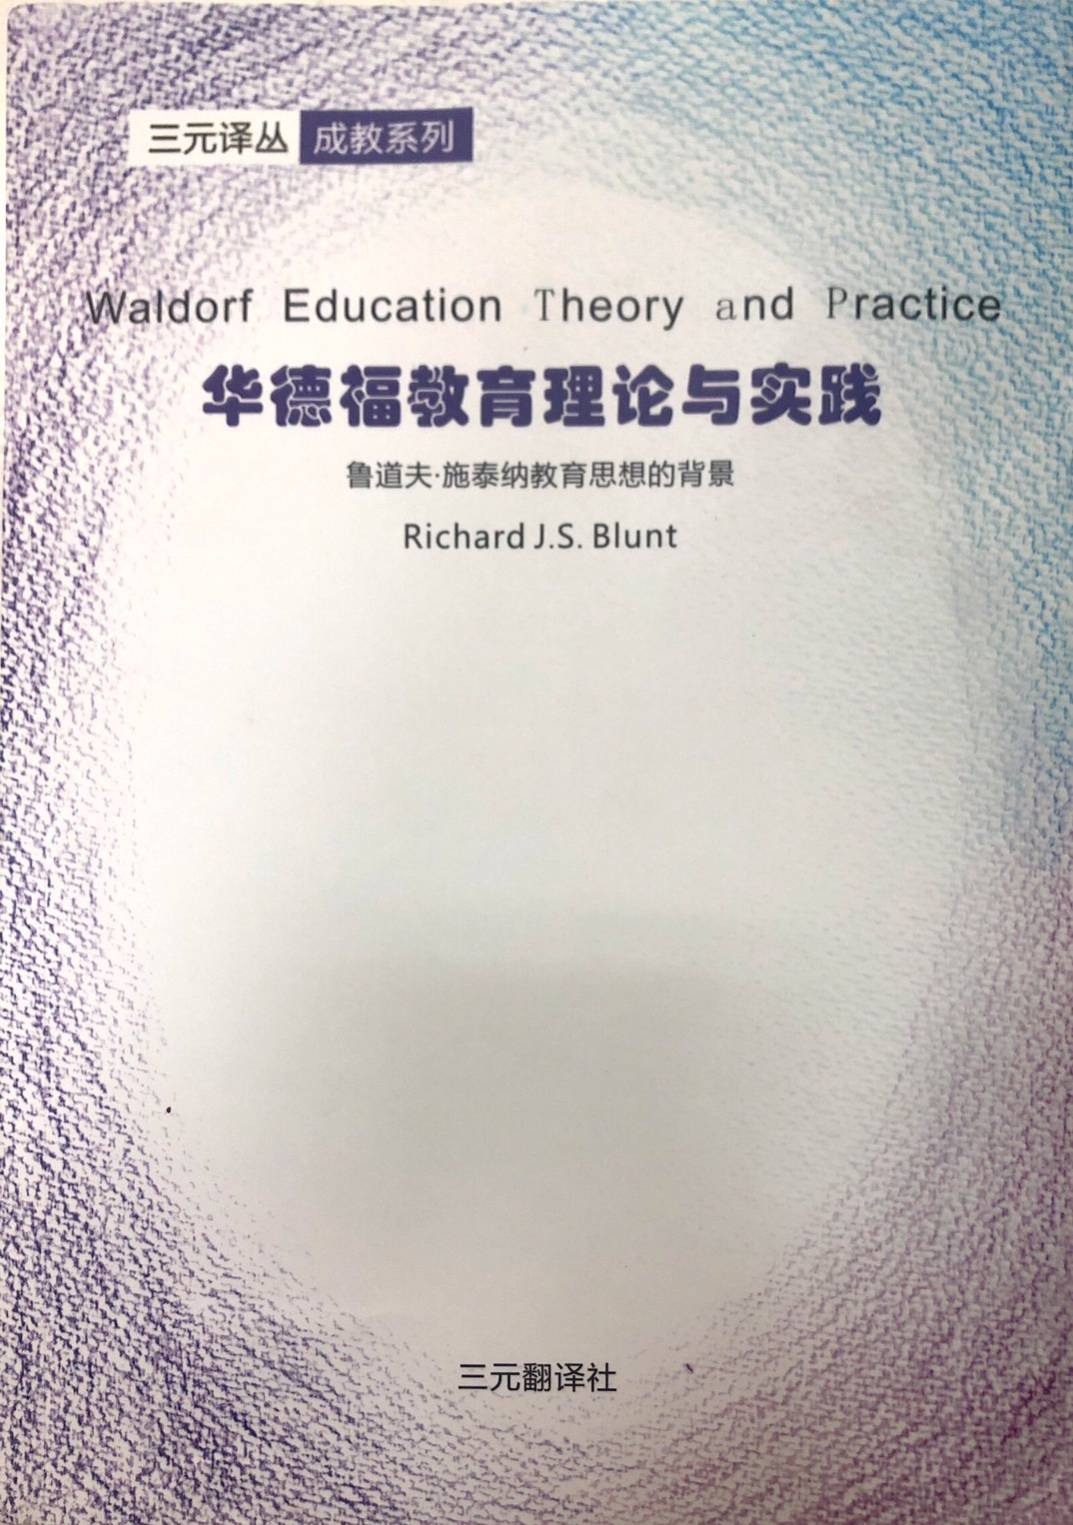 華德福教育理論與實踐(簡體書)(BC-114)